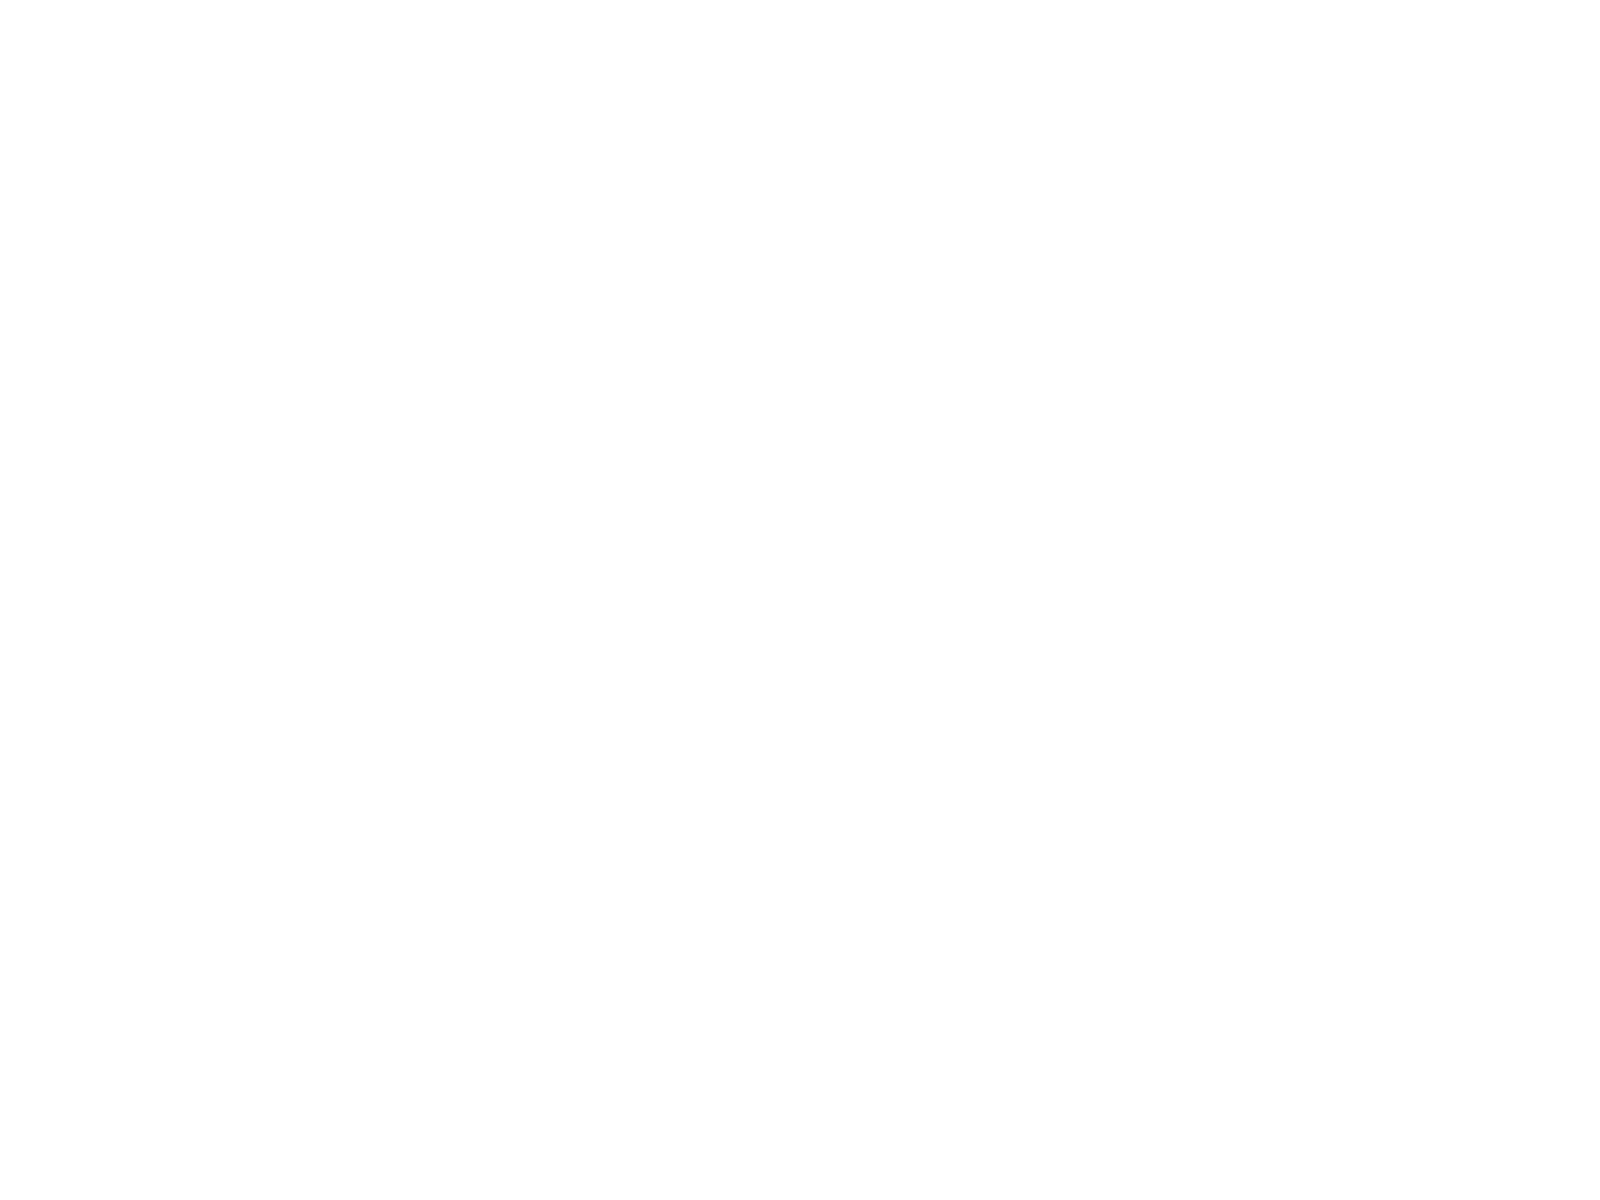 Suhail-ar-Restaurant-Logo-by-YaStudio-1